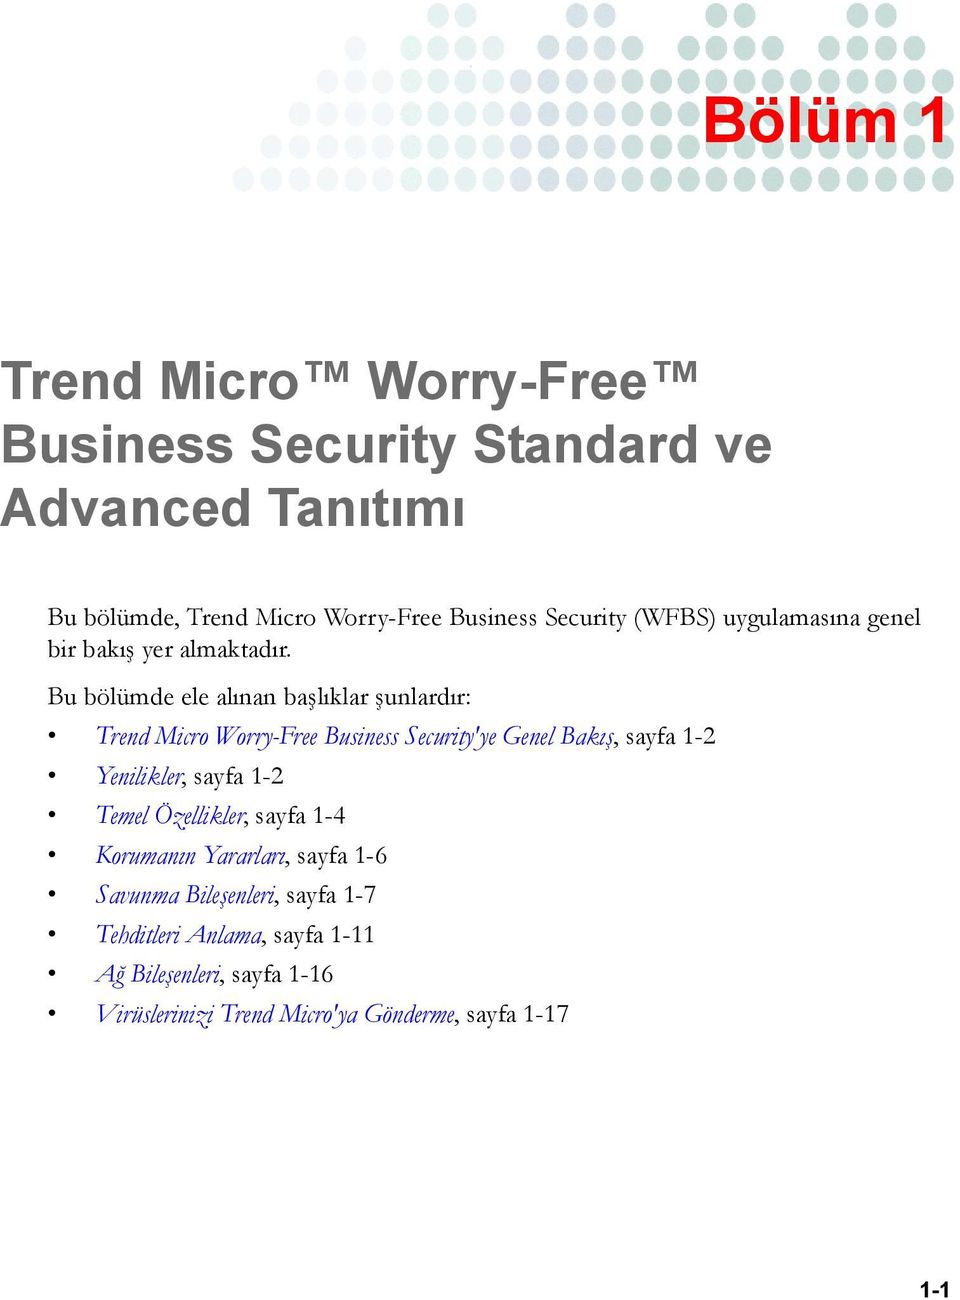 Bu bölümde ele alınan başlıklar şunlardır: Trend Micro Worry-Free Business Security'ye Genel Bakış, sayfa 1-2 Yenilikler, sayfa